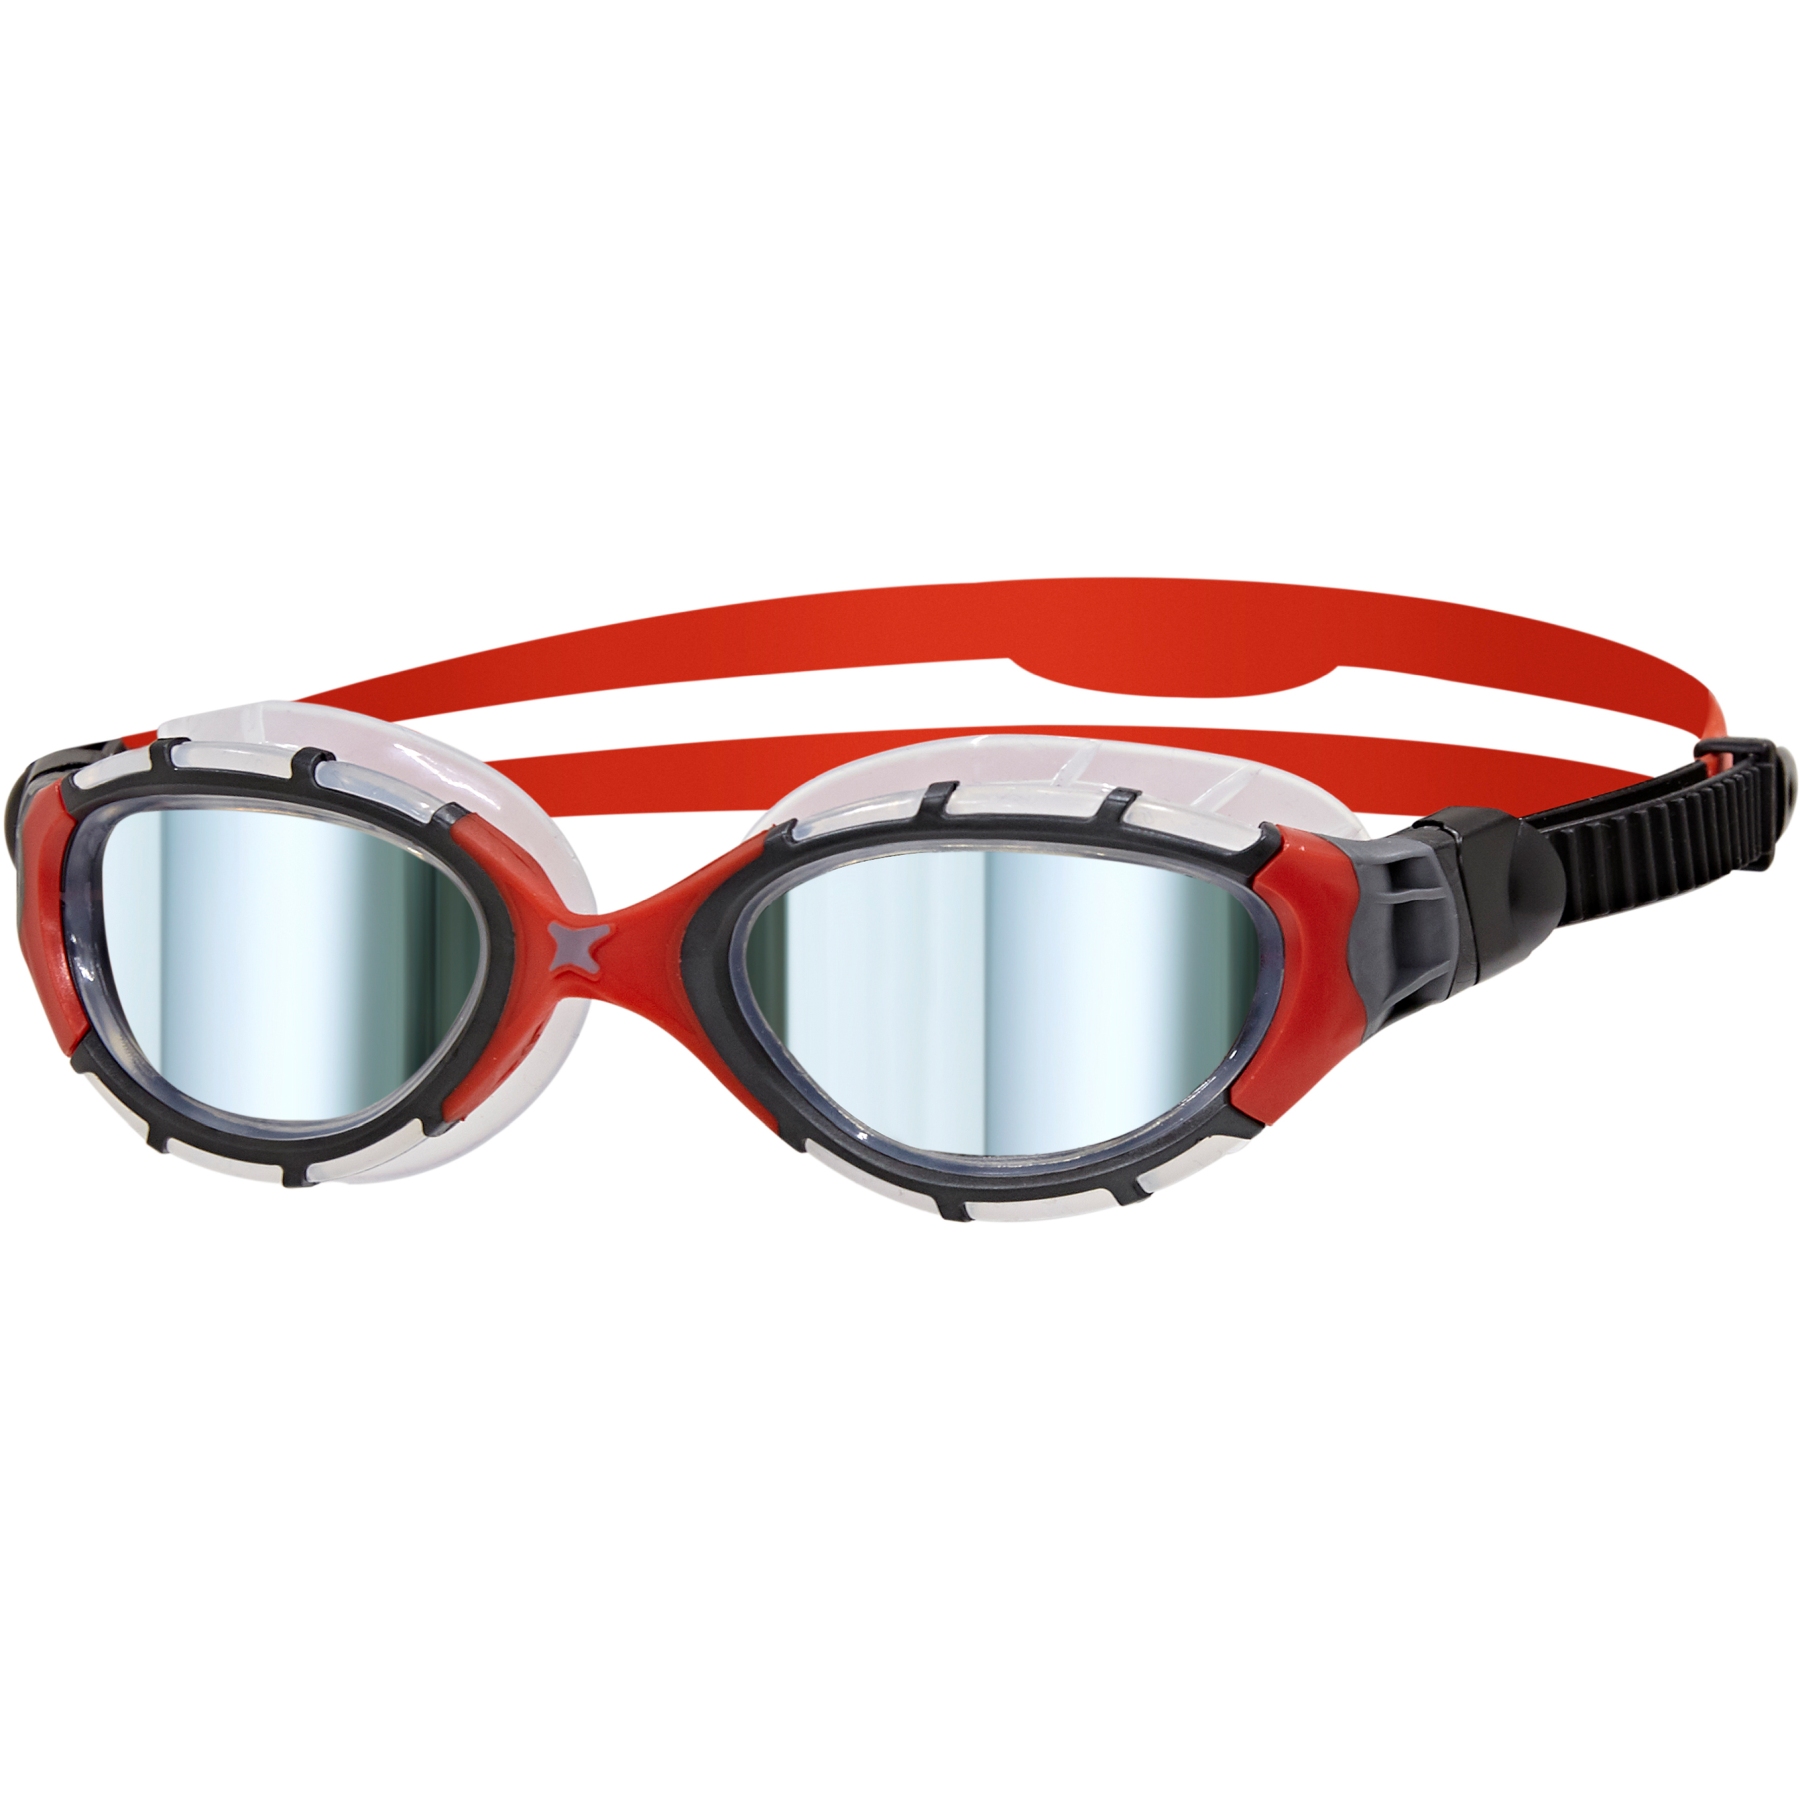 Produktbild von Zoggs Predator Flex Titanium Schwimmbrille - Verspiegelte Gläser - Regular Fit - Schwarz/Rot